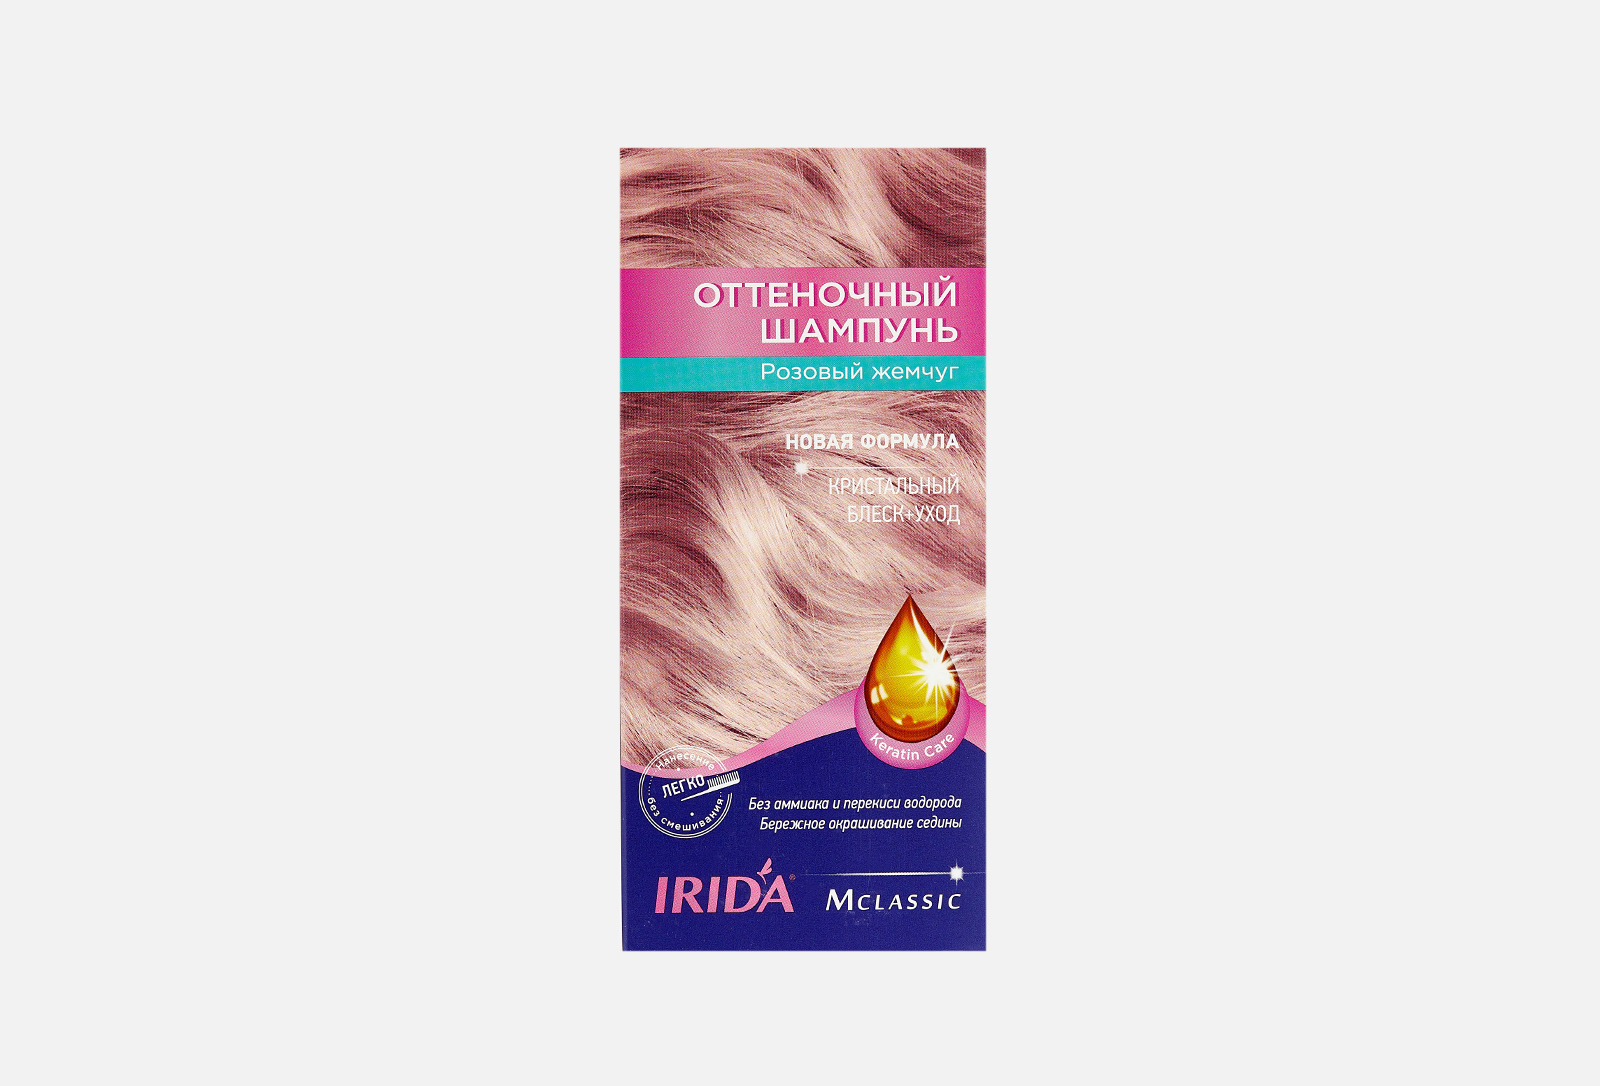 Оттеночный шампунь для волос Ирида. Ирида оттеночный шампунь розовый жемчуг. Irida оттеночный шампунь розовый жемчуг. Ирида оттеночный шампунь розовый. Ирида оттеночный купить